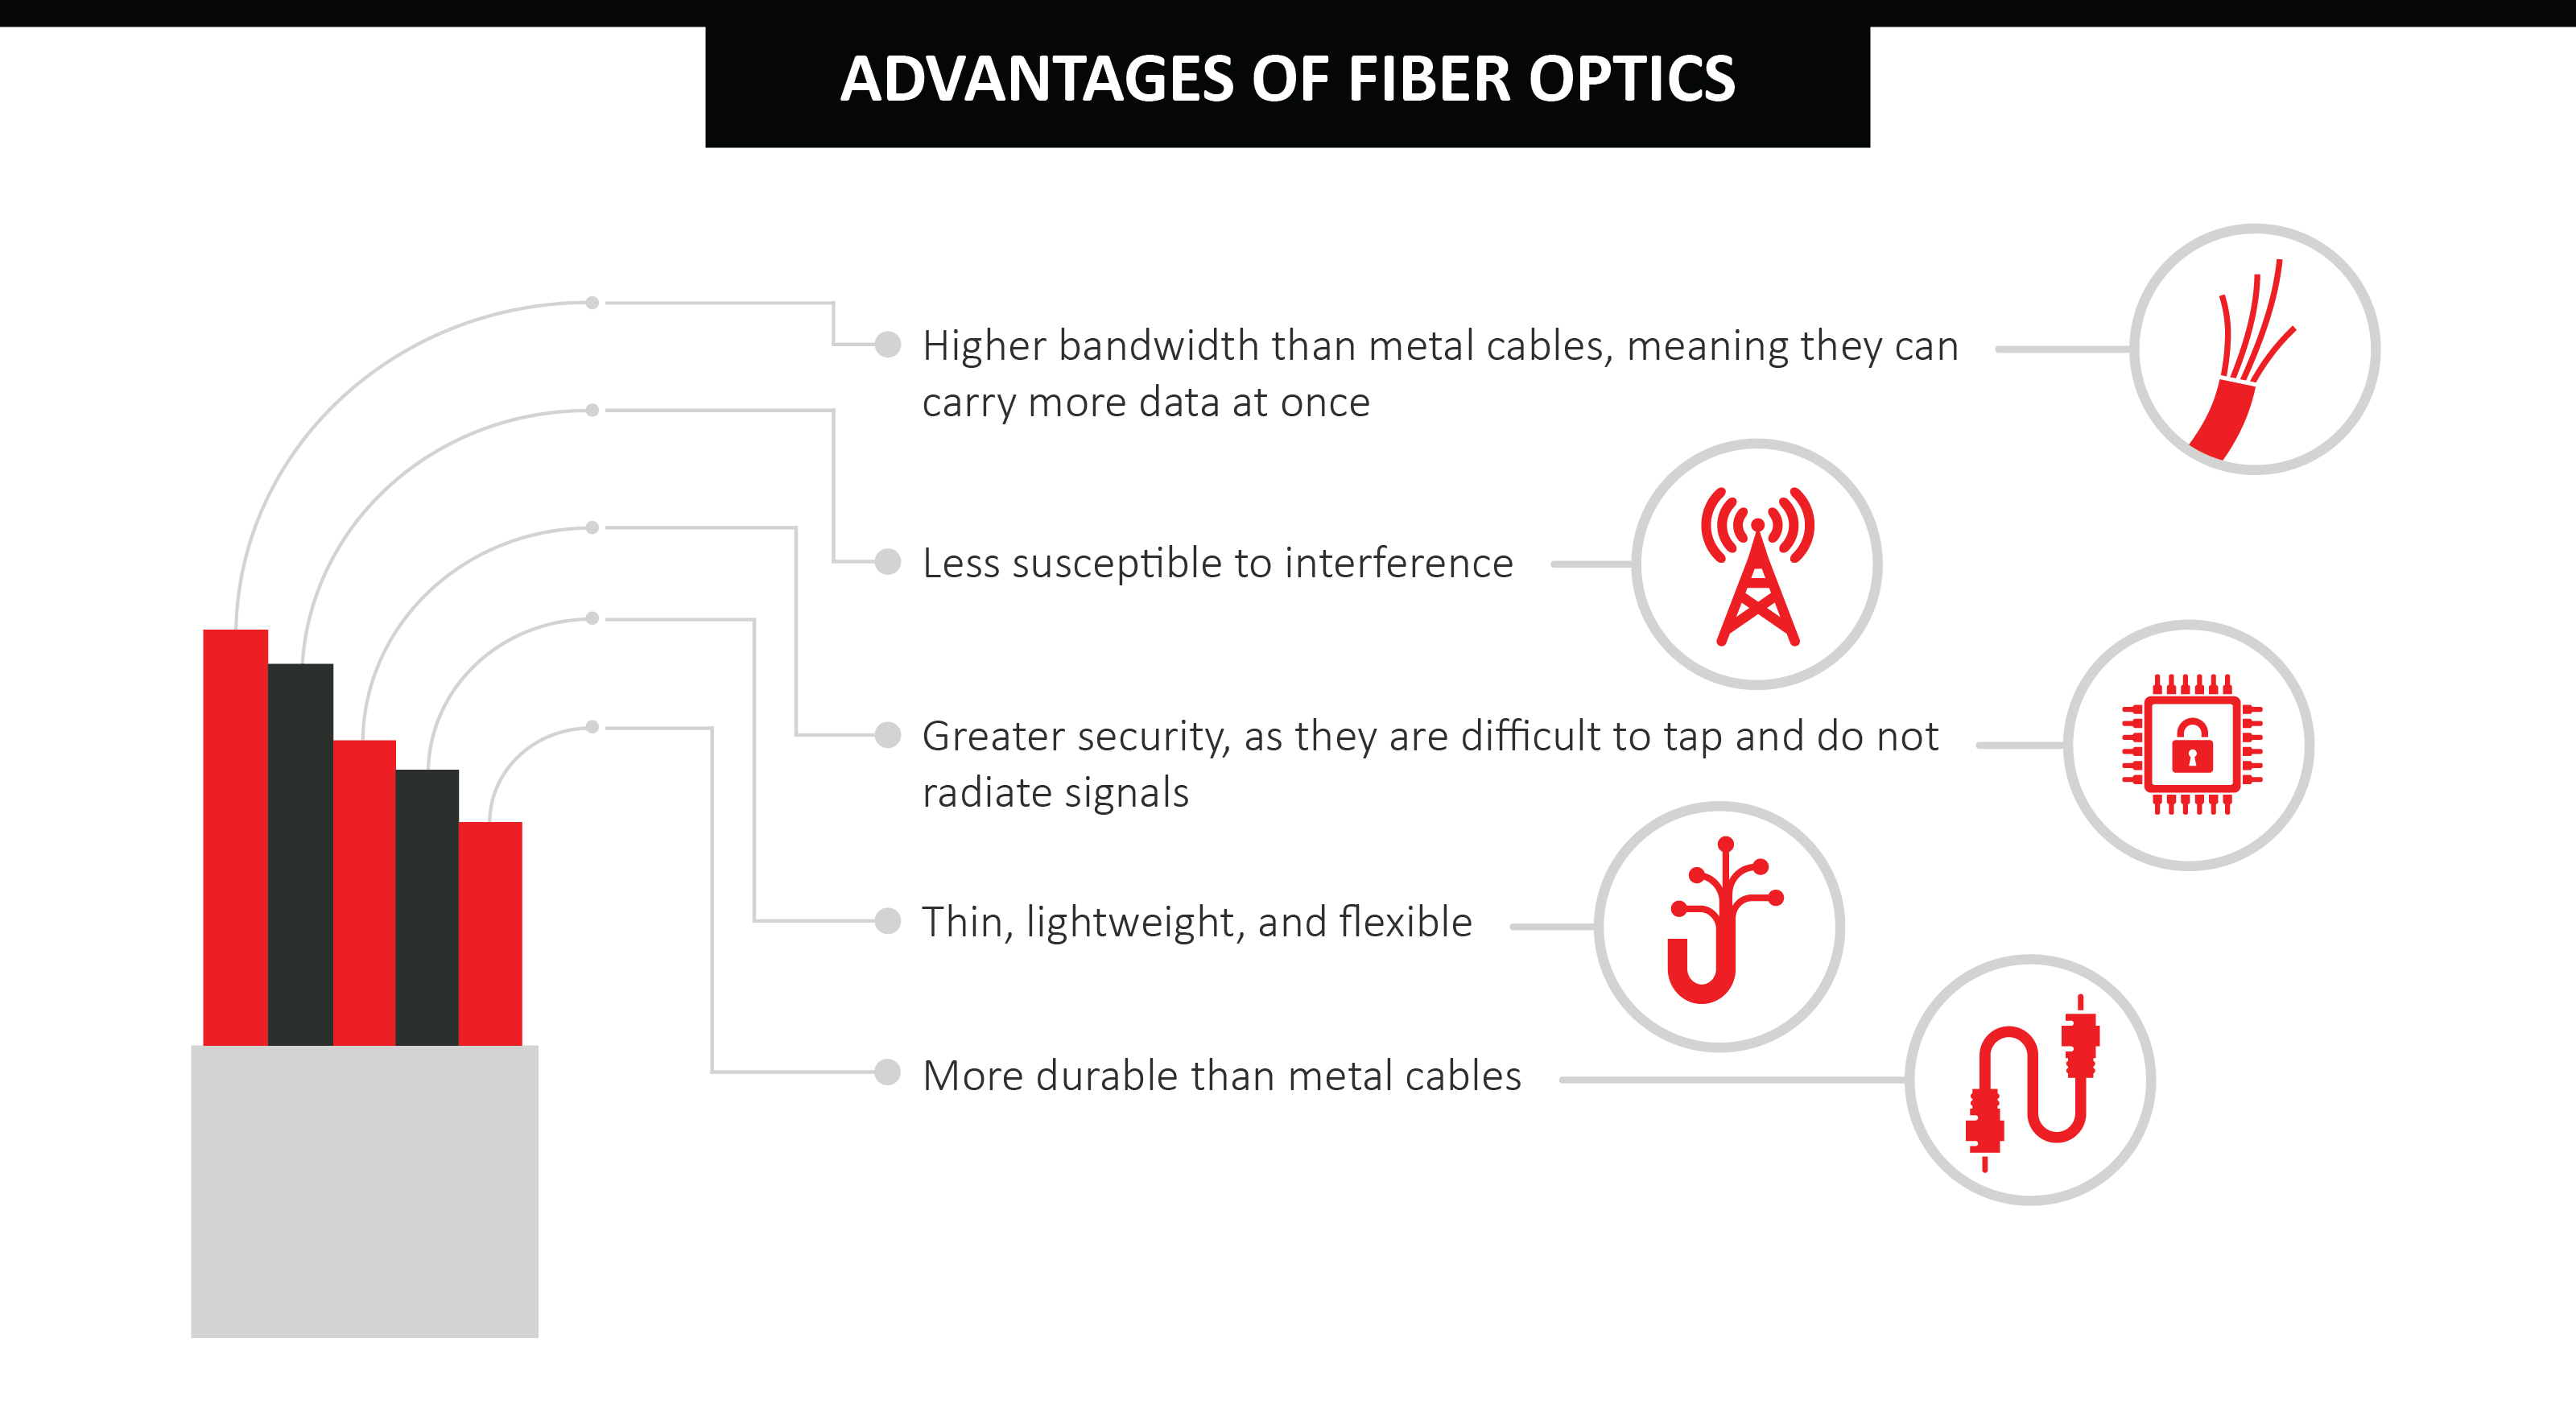 Advantages of Fiber Optics Infographic